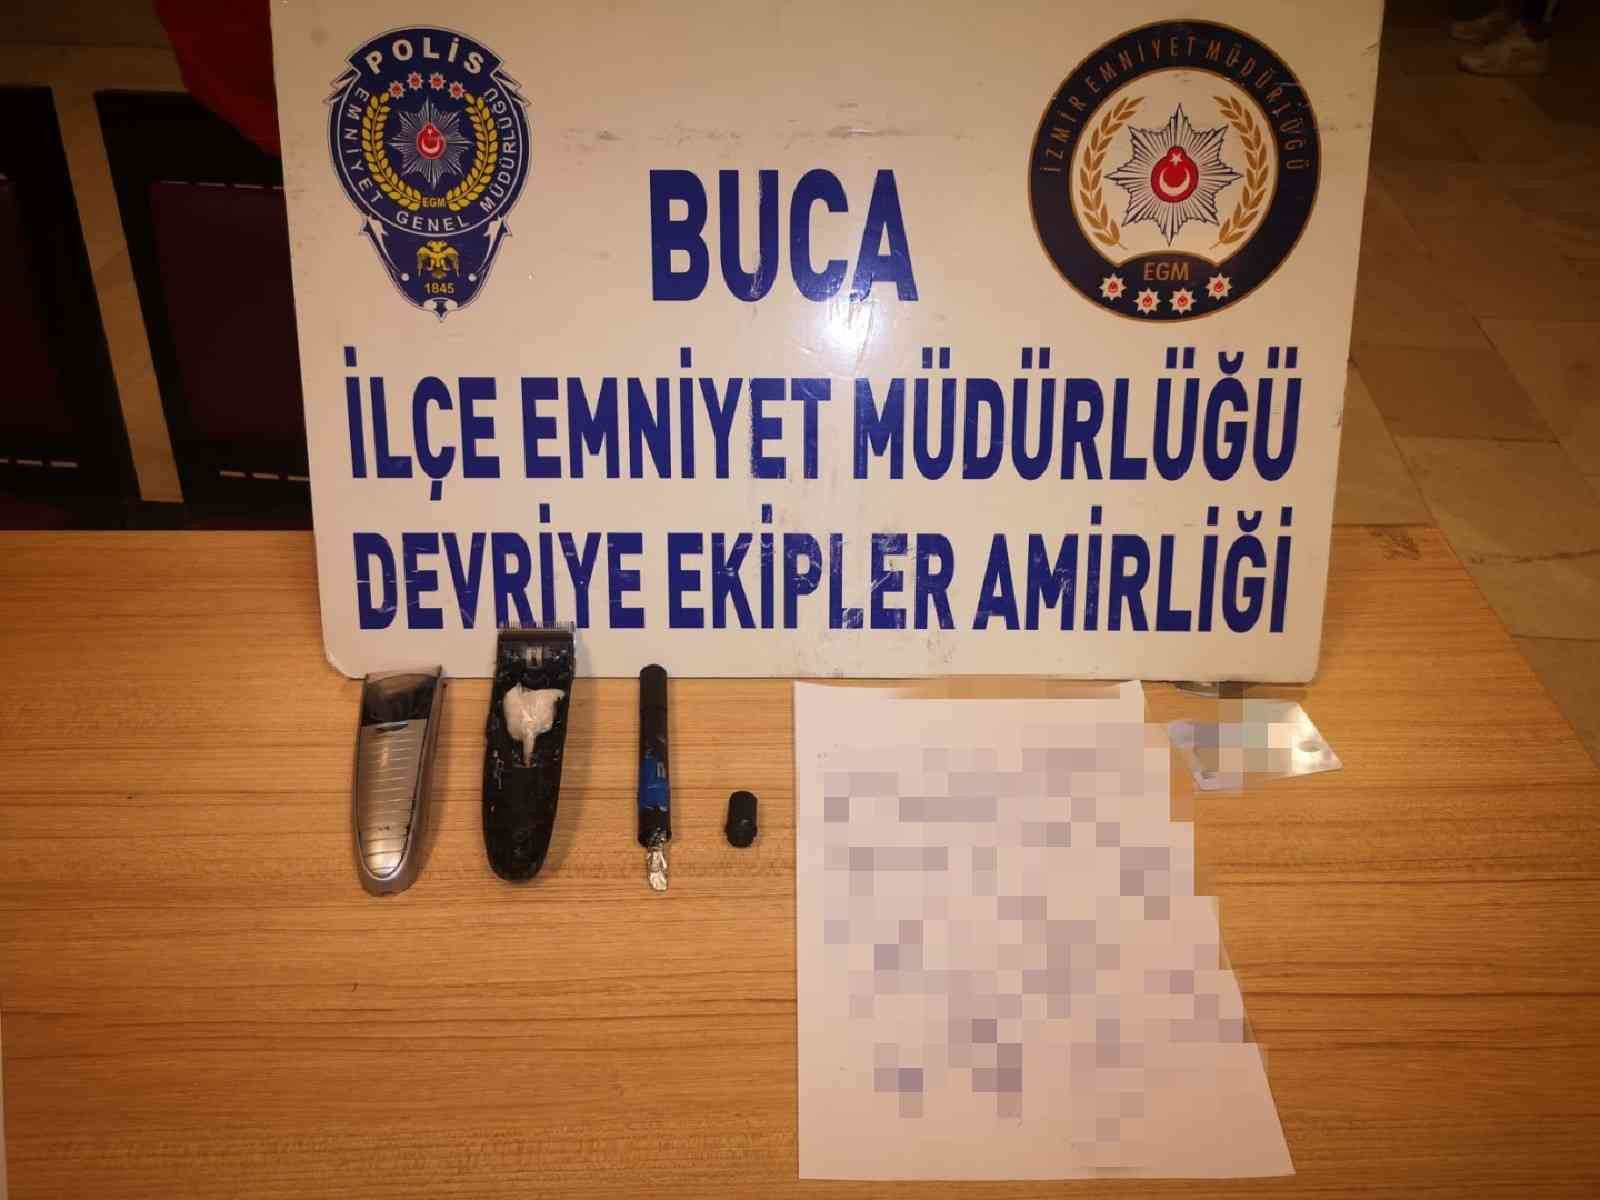 Tıraş makinesi ve kalemin içine uyuşturucu gizlemiş #izmir